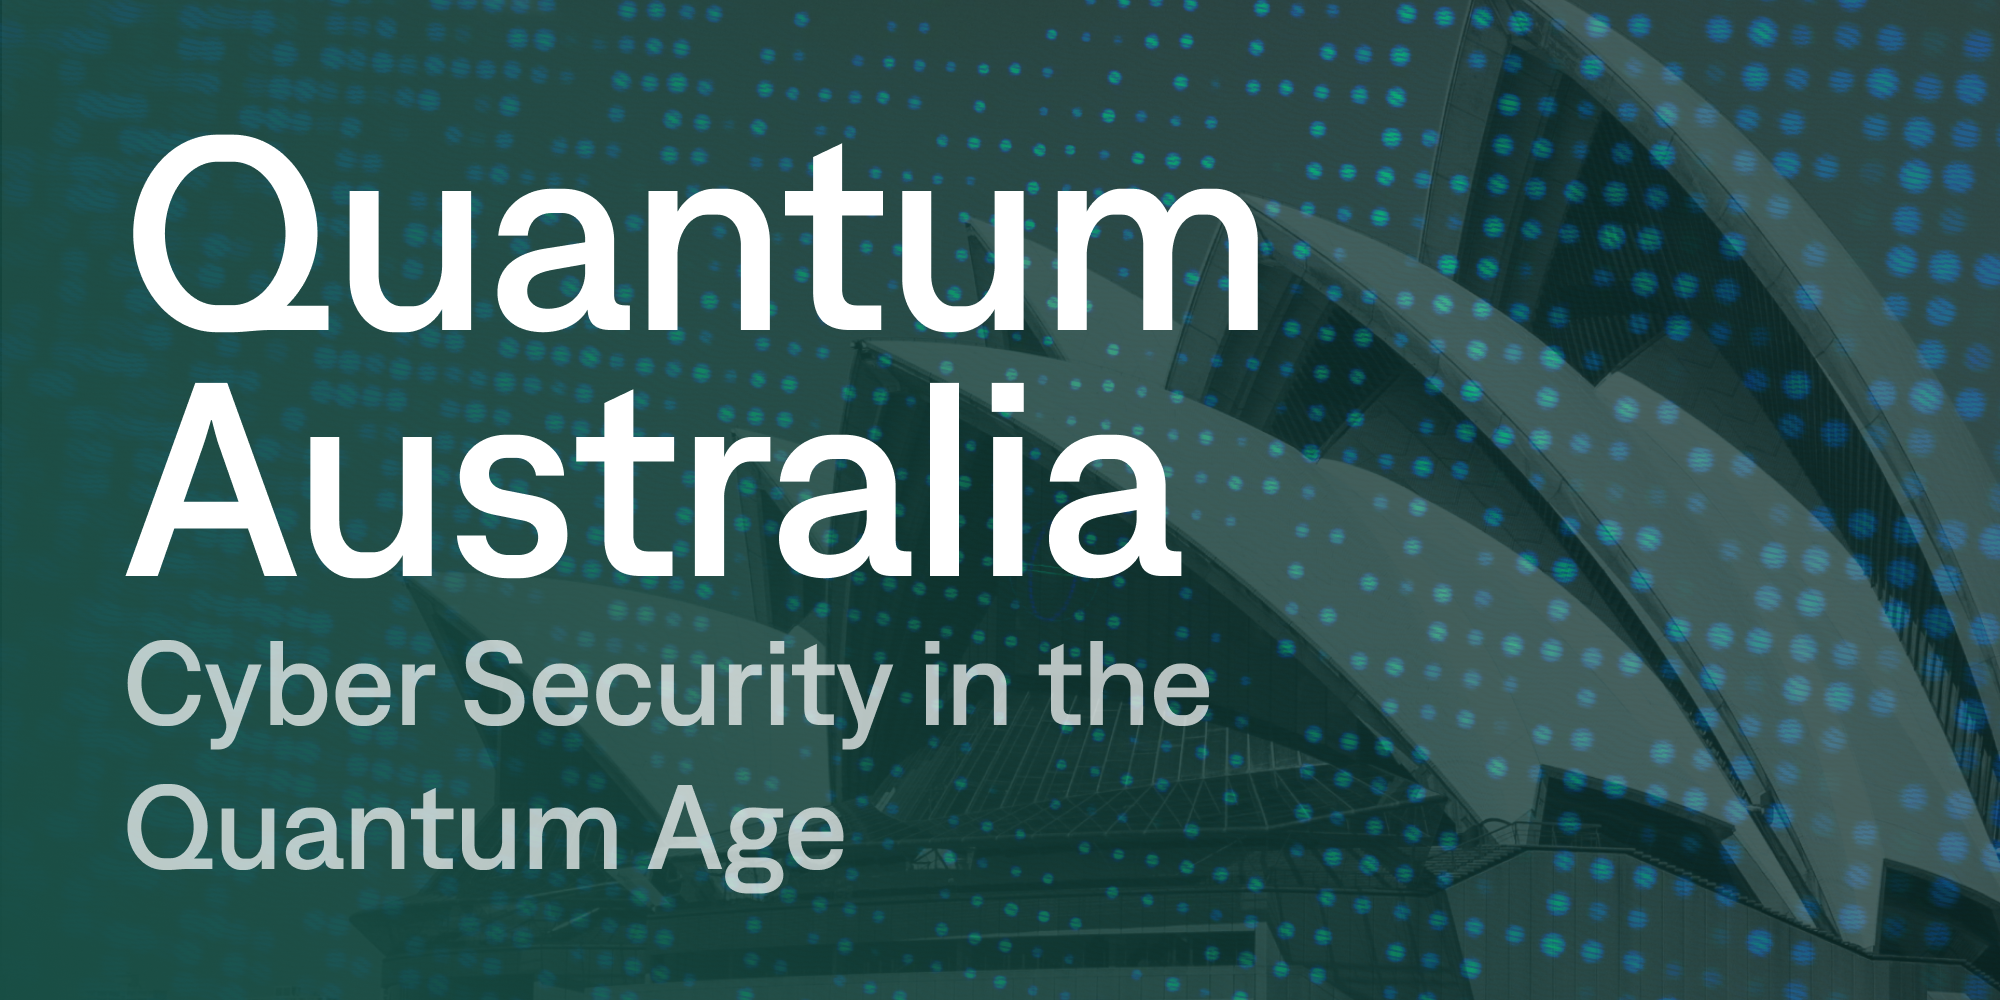 Quantum Australia: Cyber Security in the Quantum Age